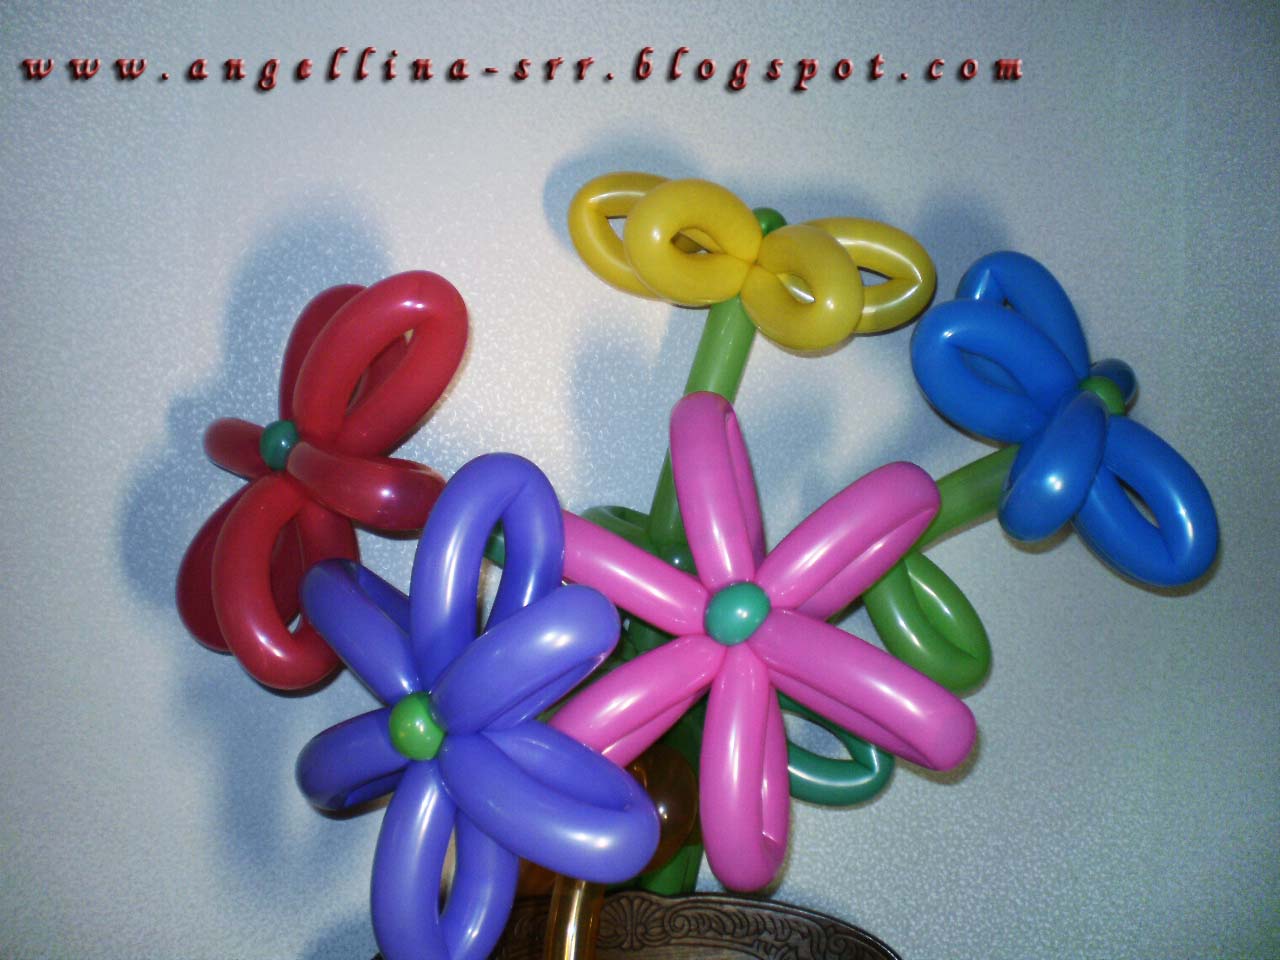 Цветы из шариков колбасок фото: Цветы и букеты из шаров